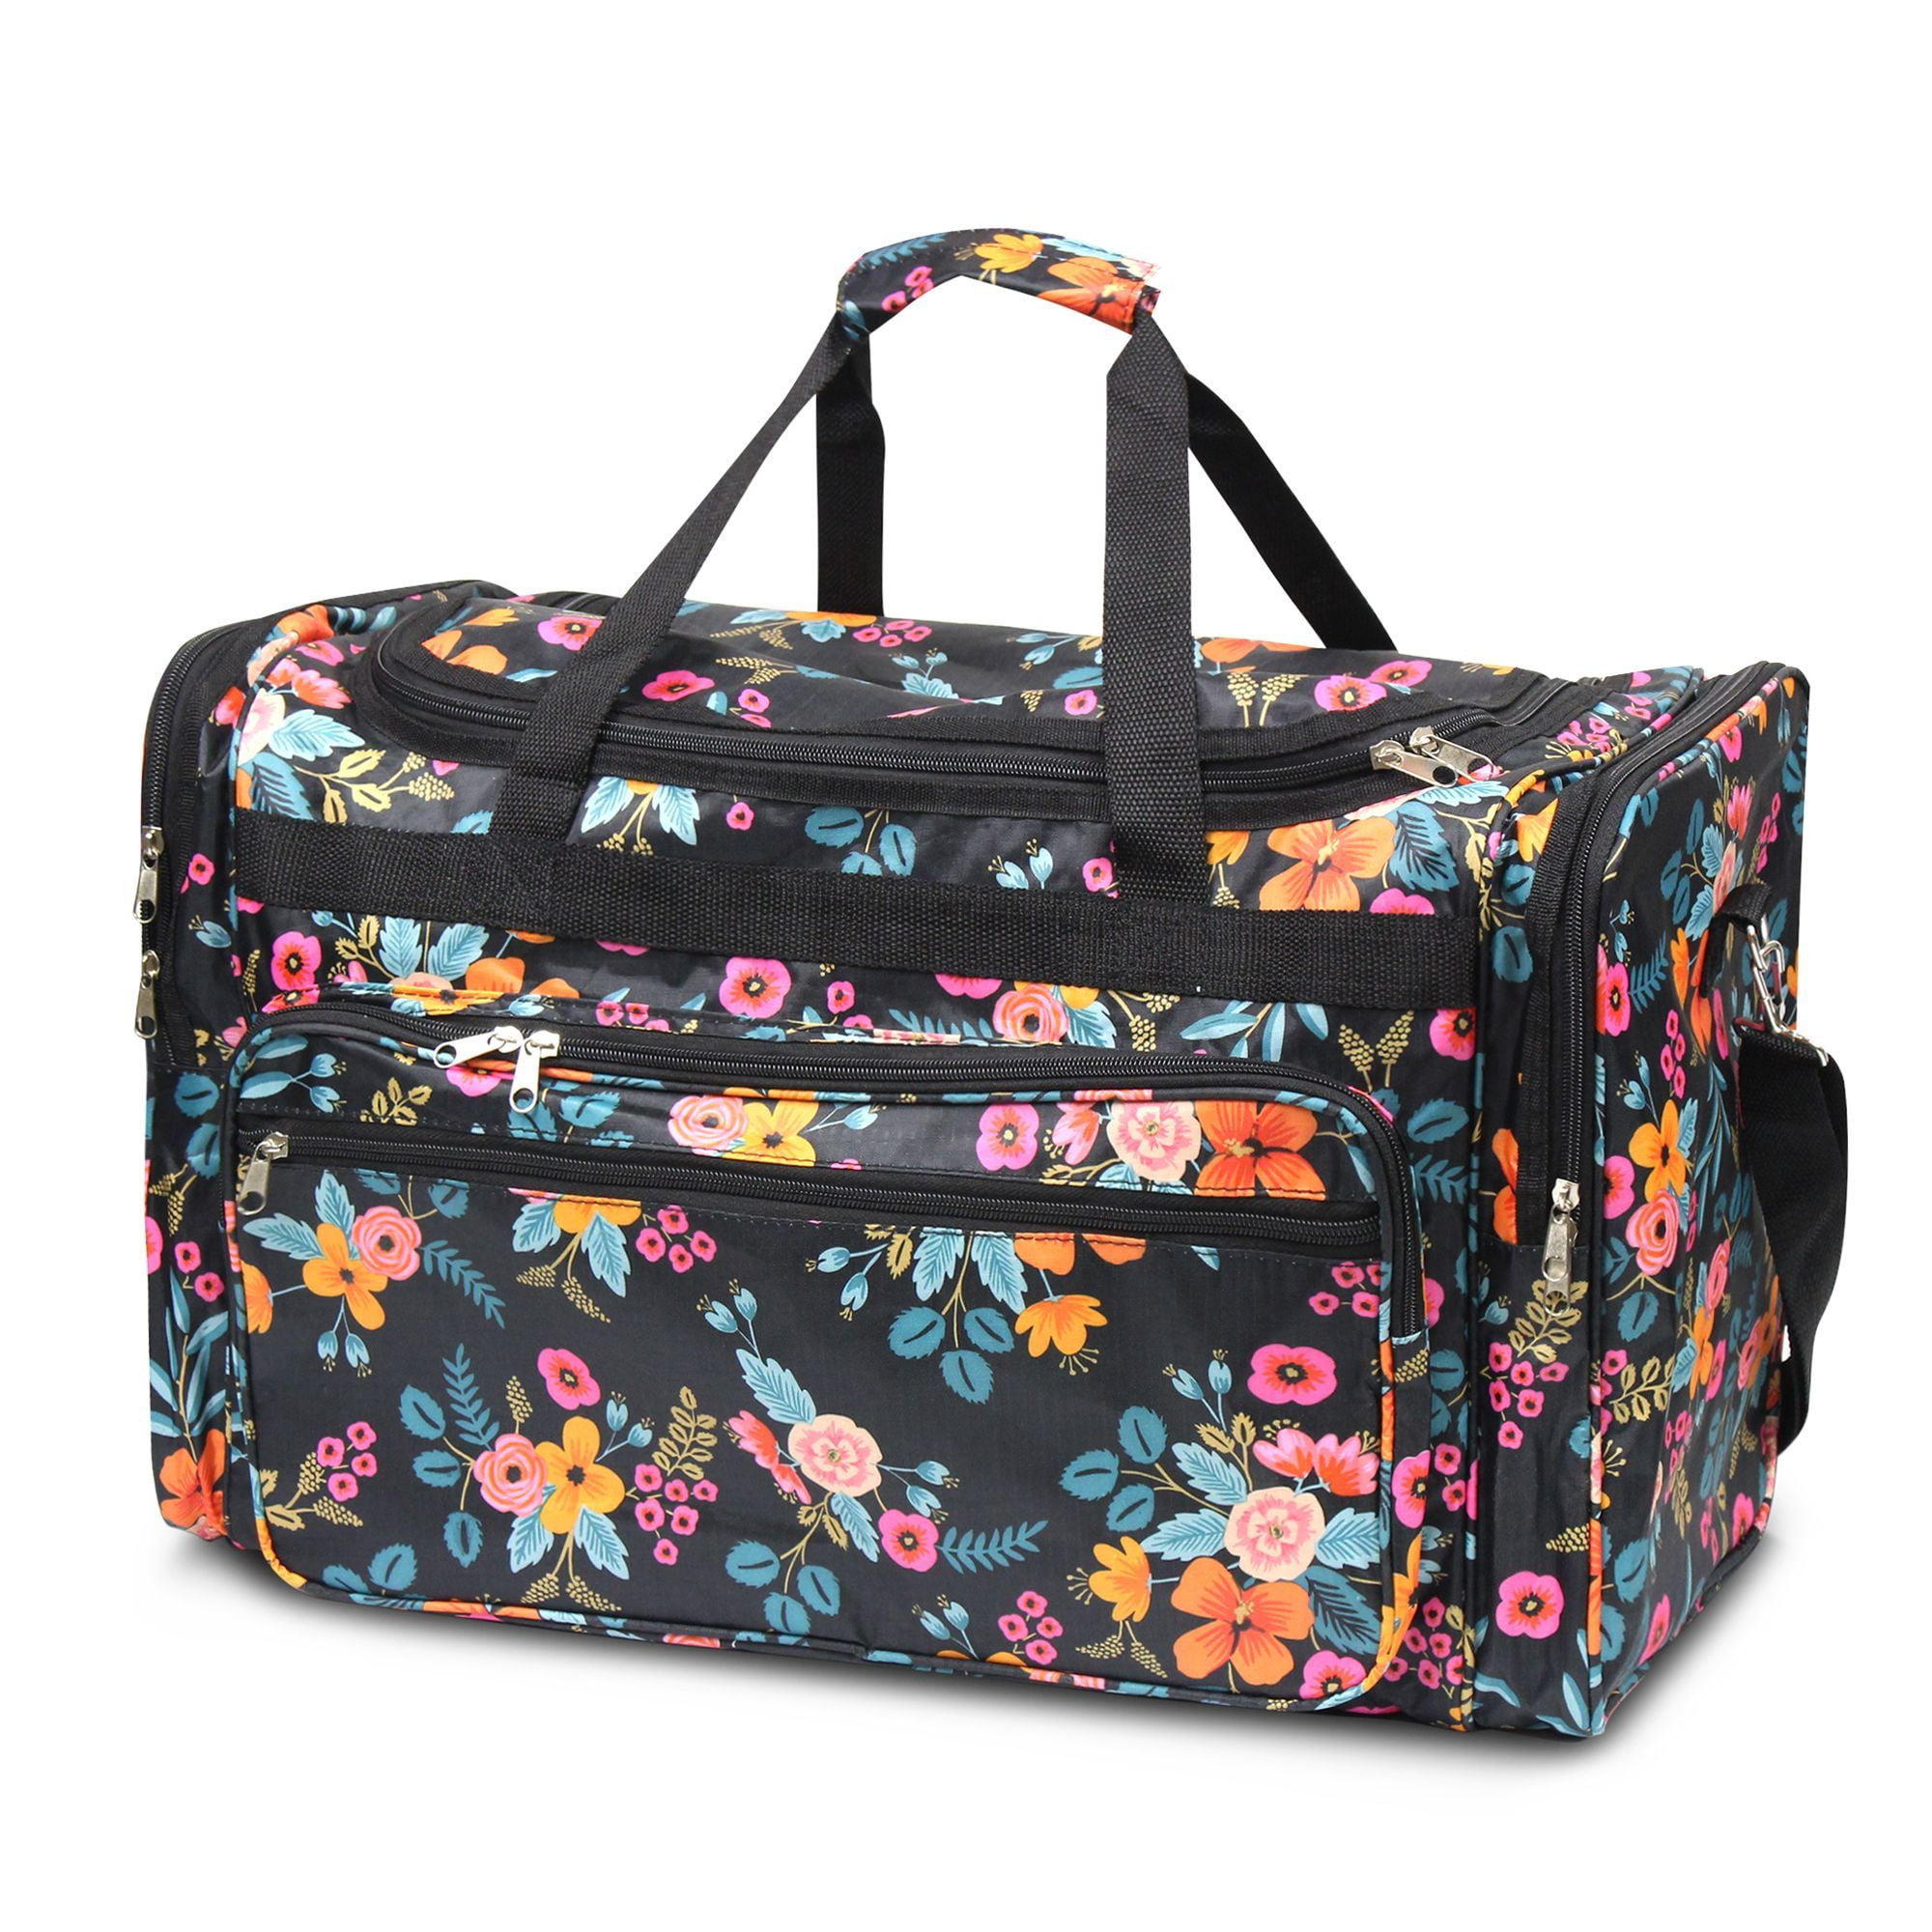 Zodaca Designed Travel Duffel Weekend Shoulder Luggage Bag Sports Gym ...